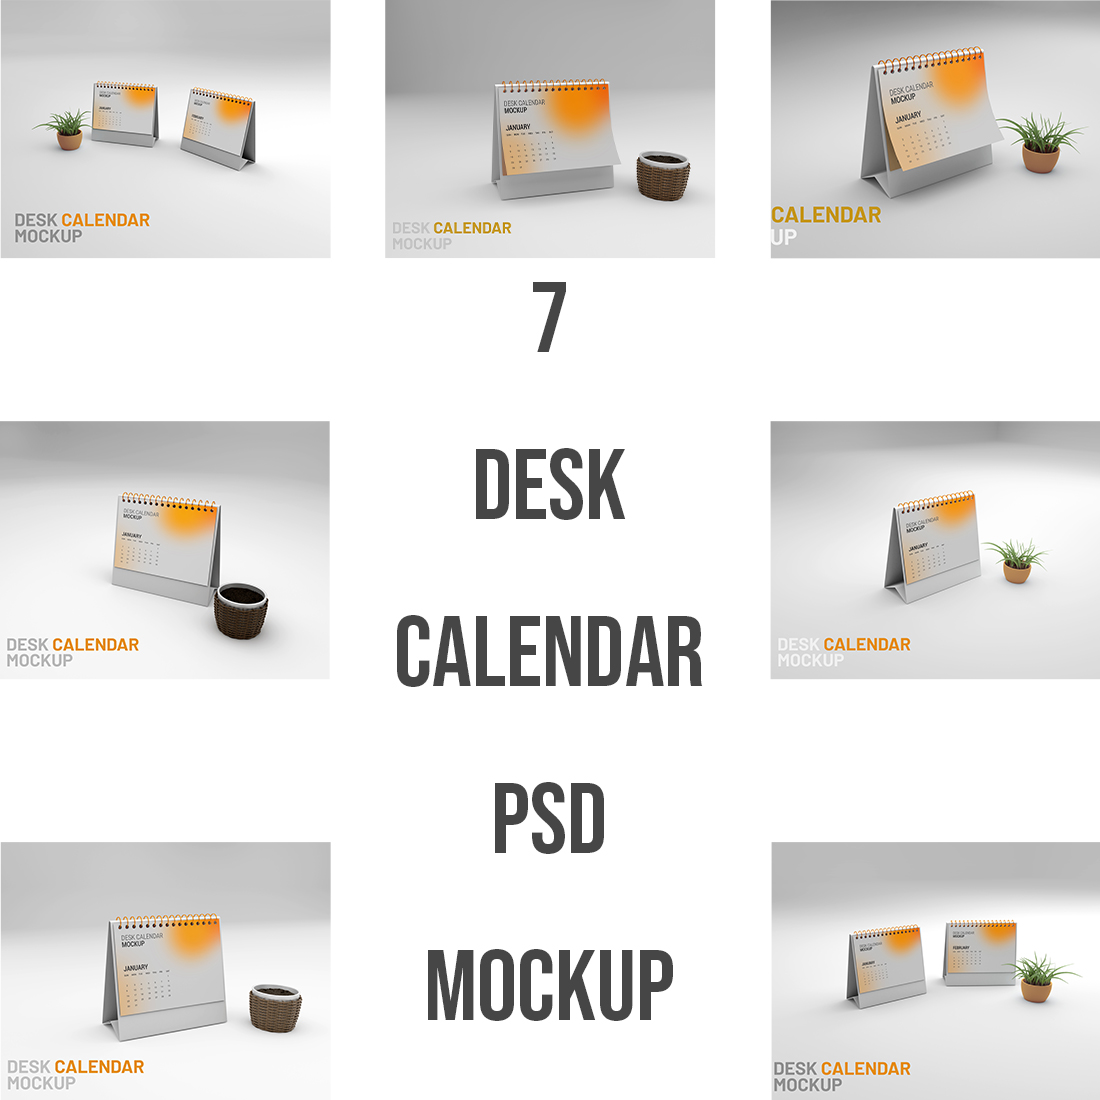 7 Desk Calendar PSD Mockup preview image.